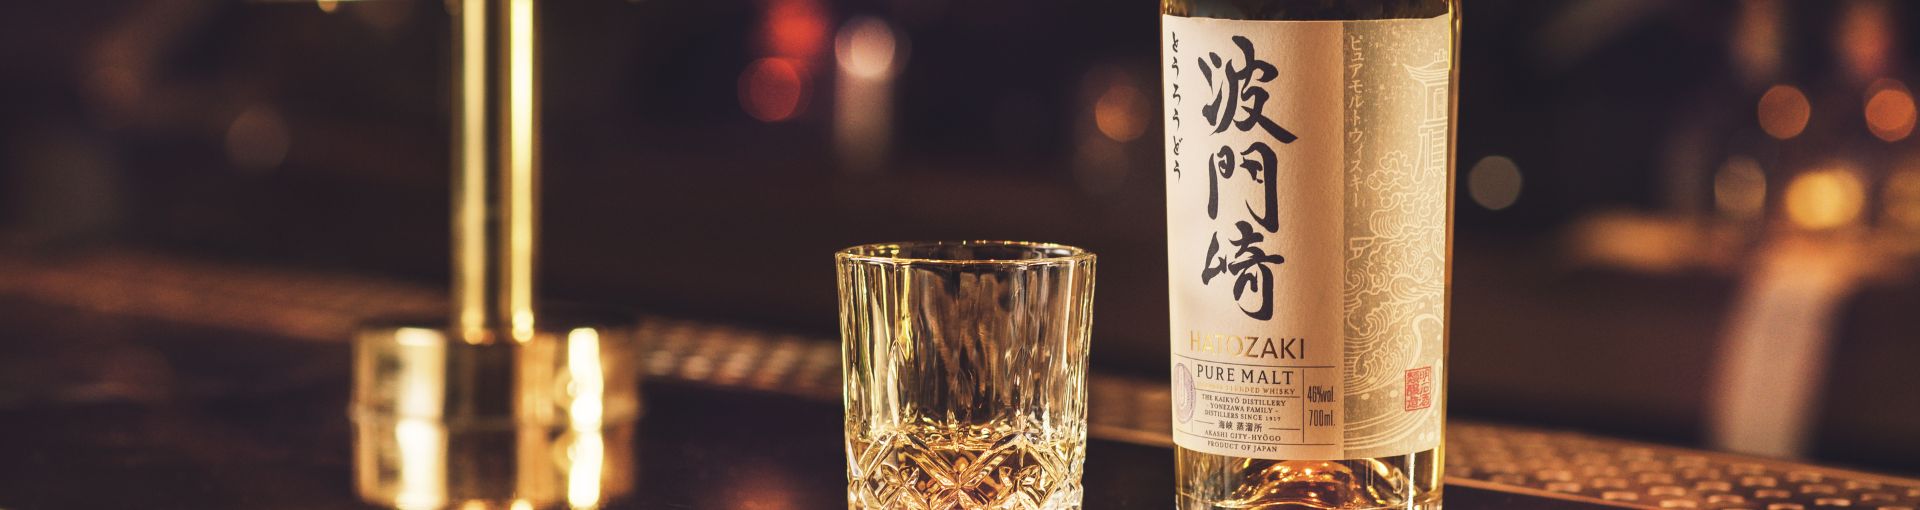 Ein Whiskey Glas gefüllt mit Hatozaki Whiskey und rechts daneben eine Flasche Hatozaki Whiskey, beides auf einer Bar mit einem goldenen Wasserhahn